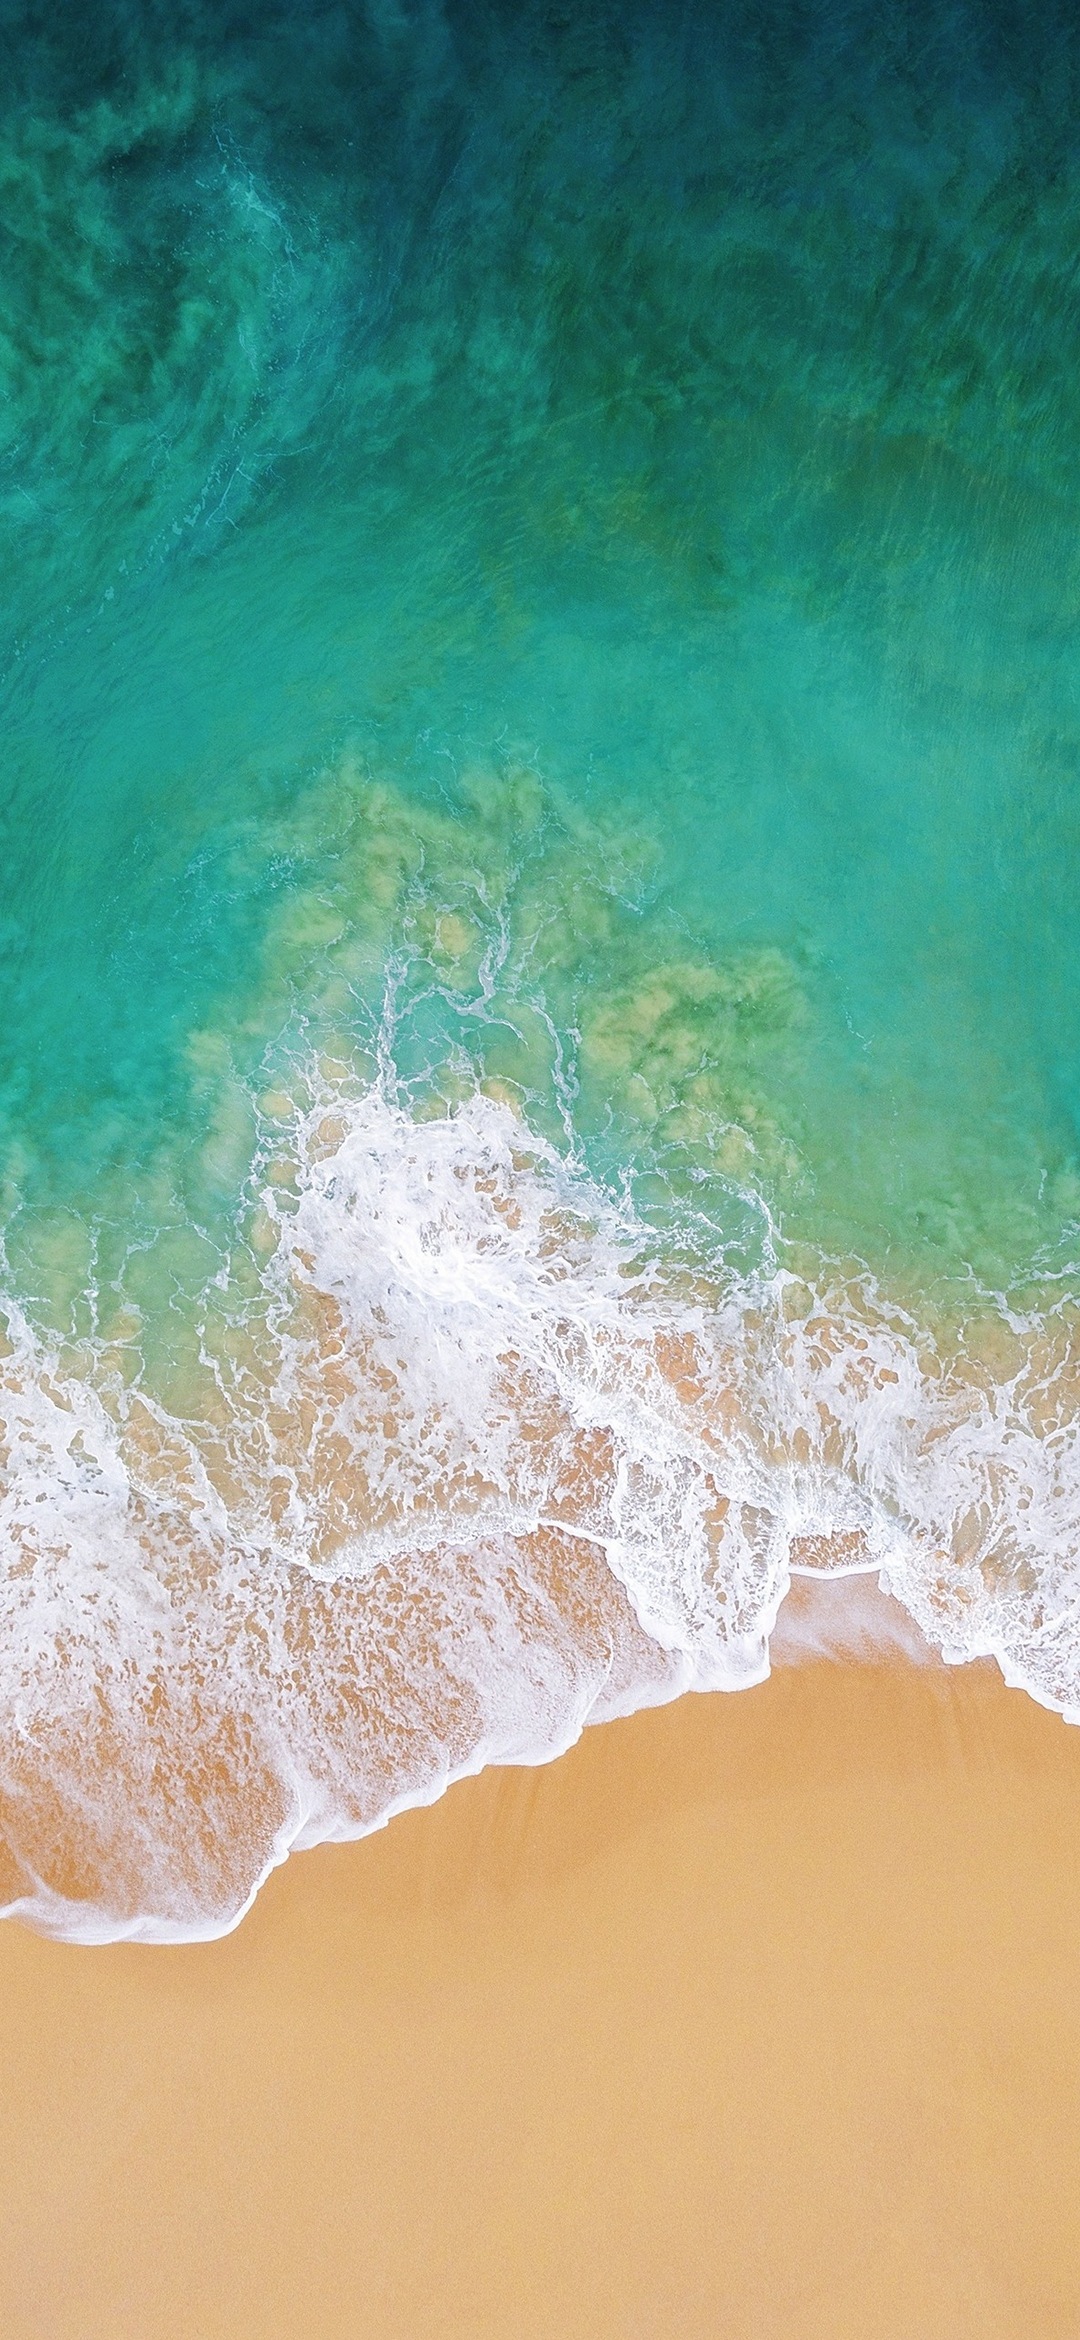 緑の海と綺麗な砂浜 Galaxy A30 Android スマホ壁紙 待ち受け スマラン